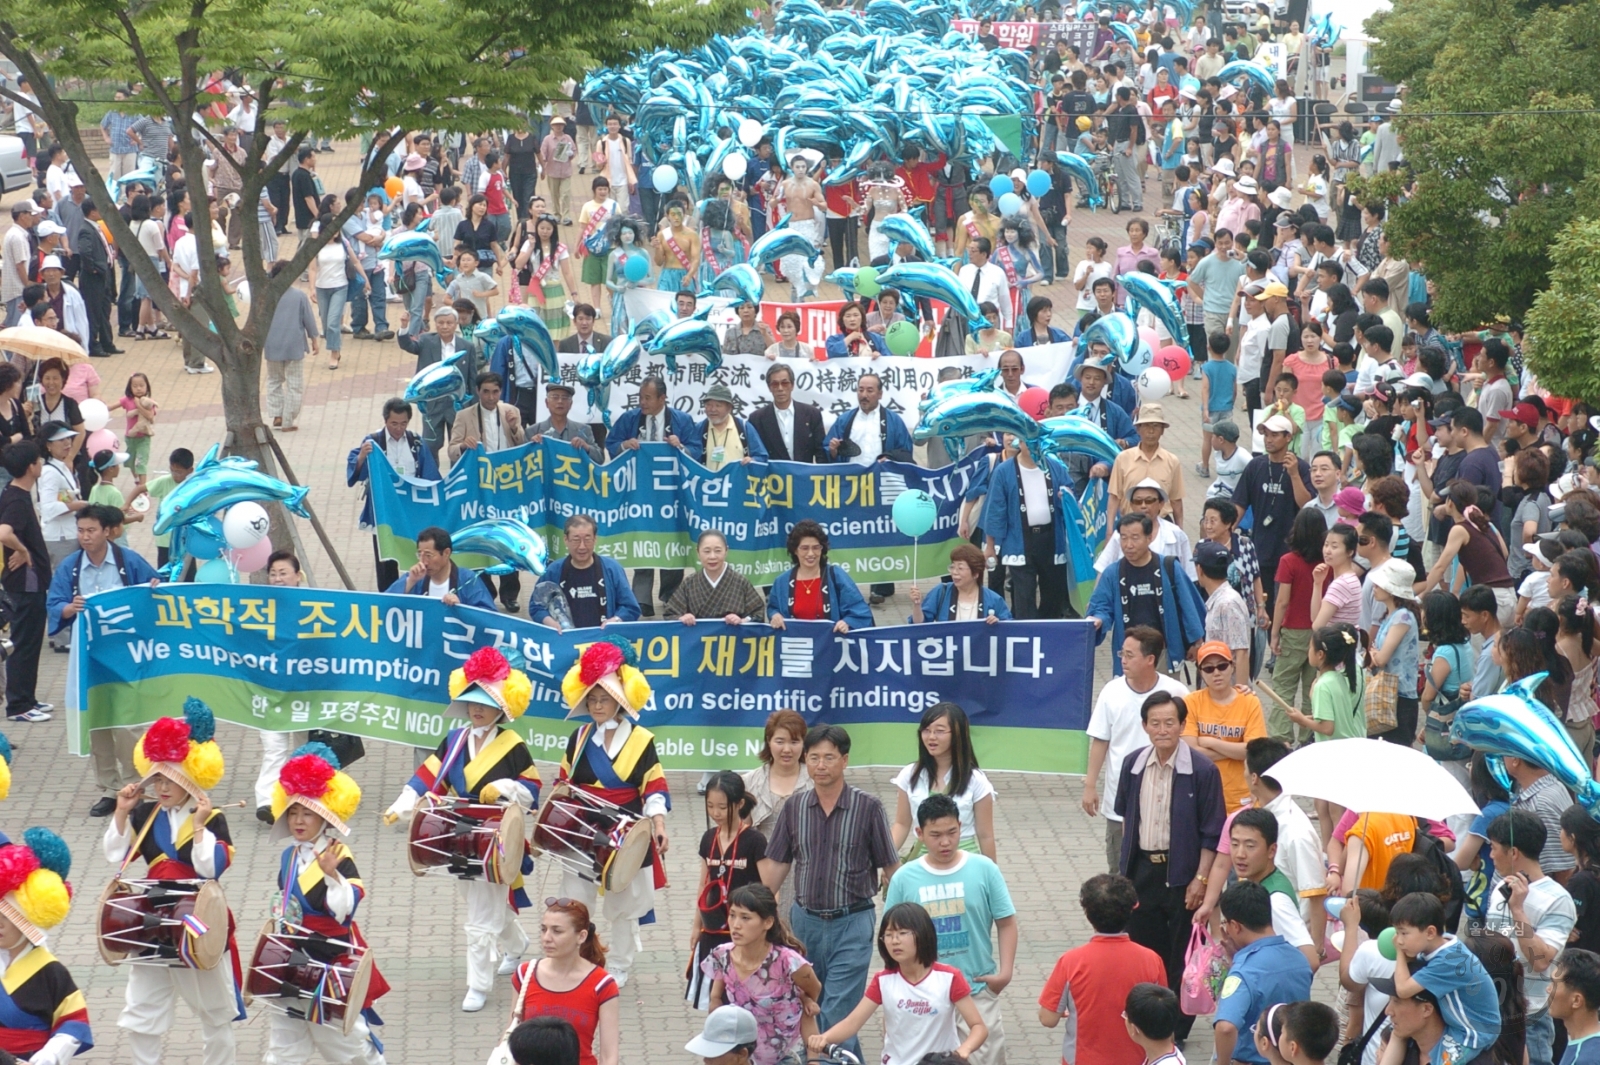 제11회 울산고래축제 마라톤 일부 시가행진 의 사진